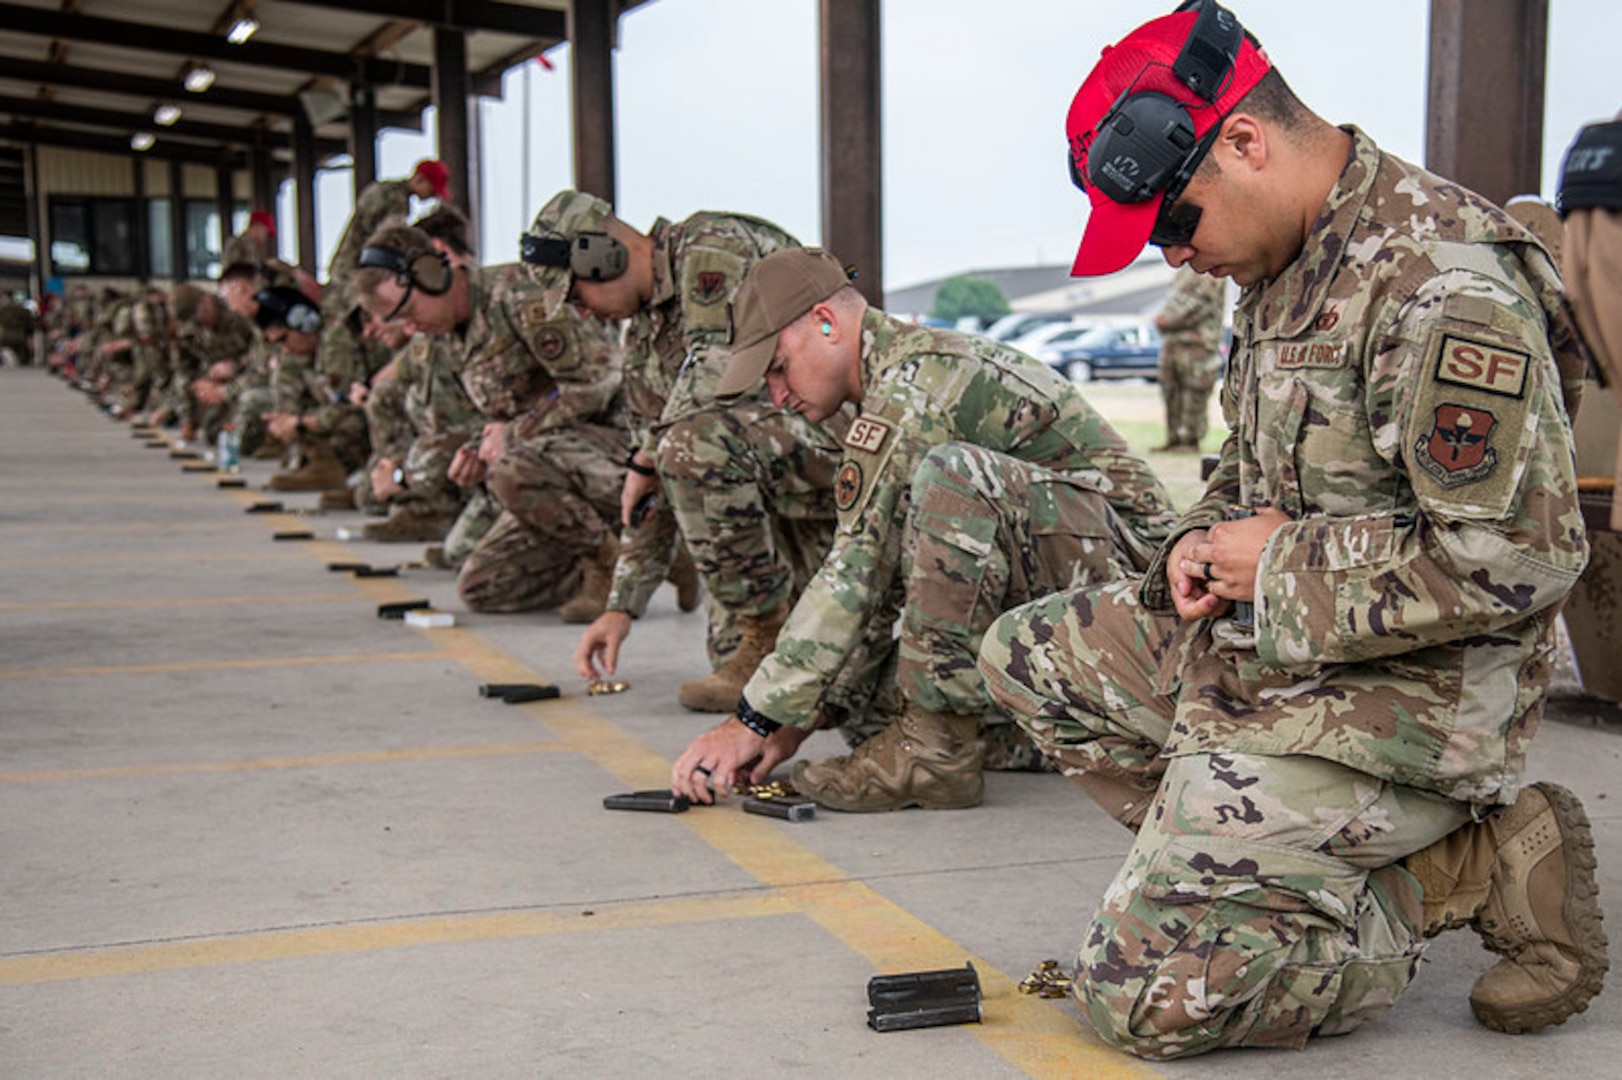 Military members preparing weapons.